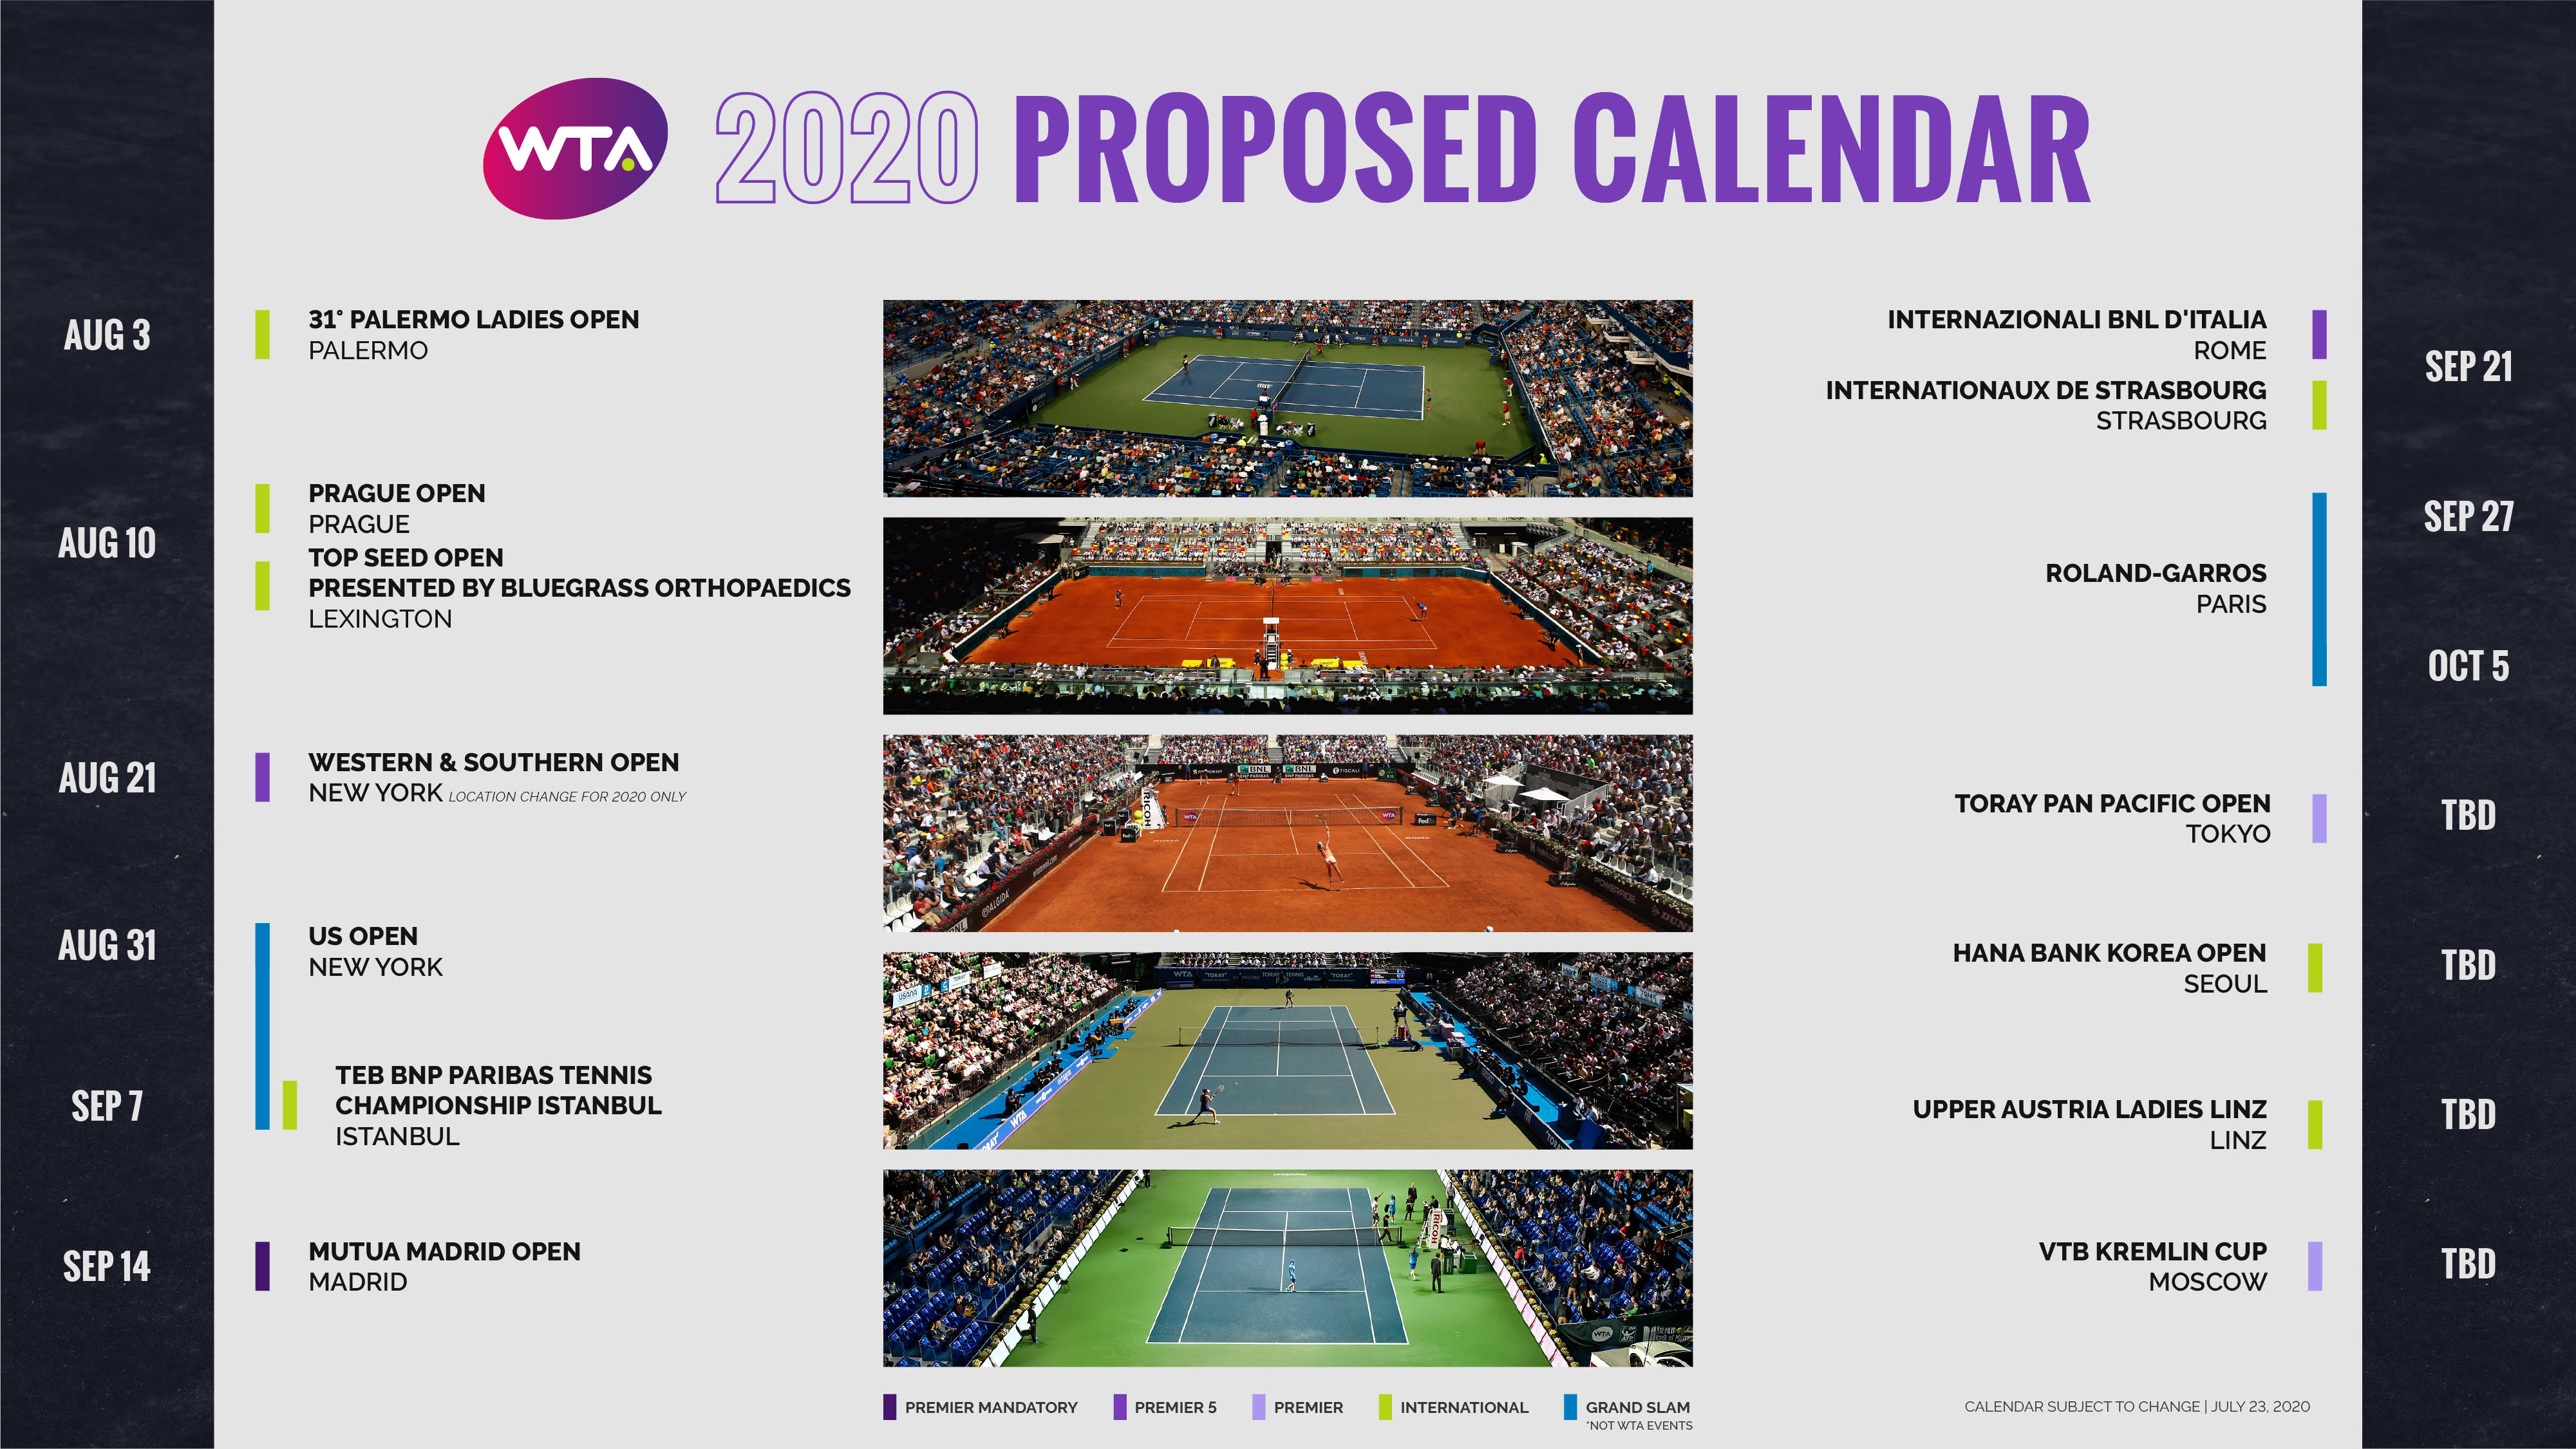 Теннис расписание 2024 женщины и мужчины